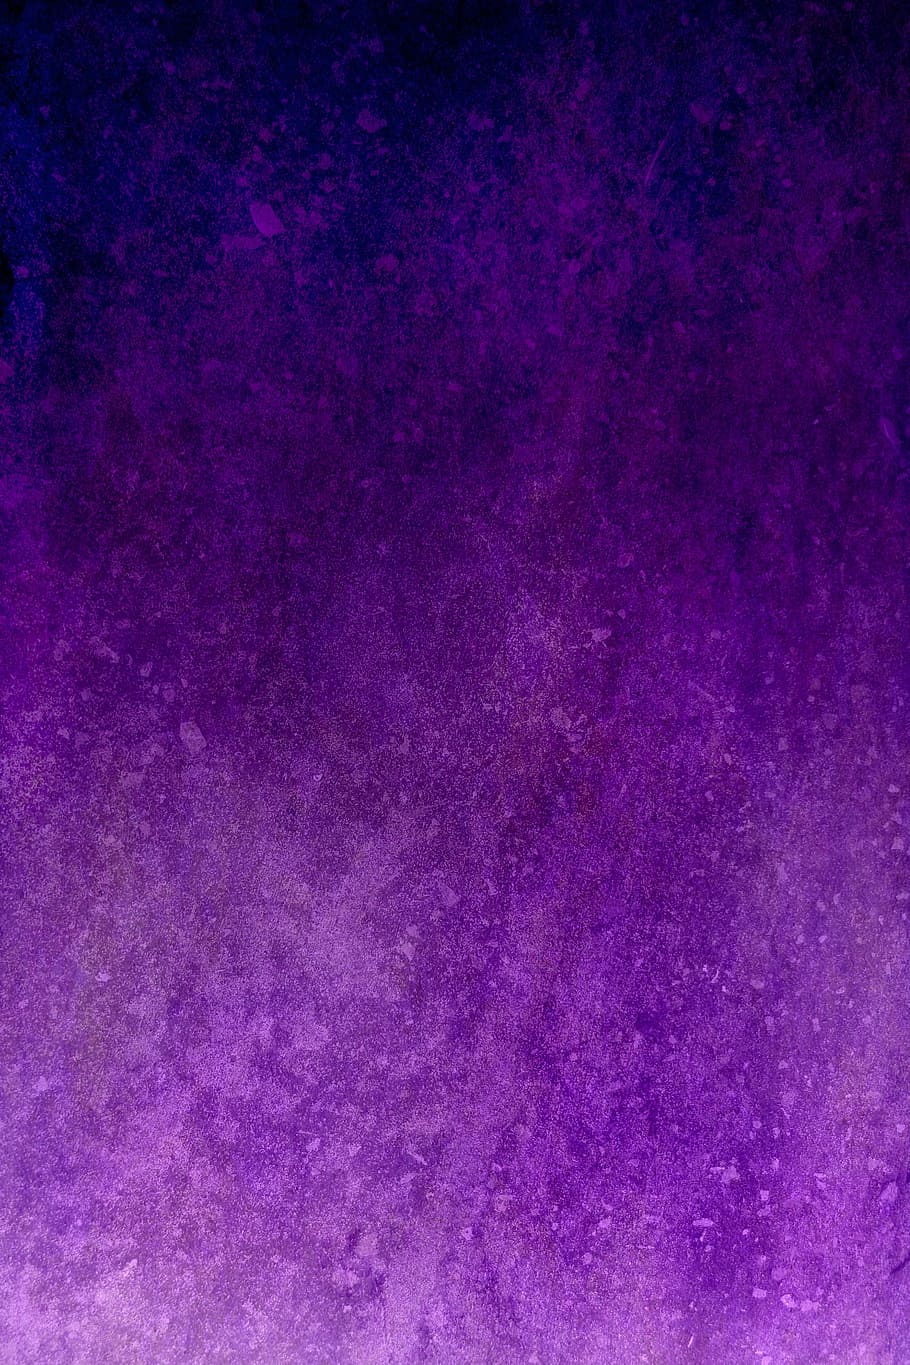 permukaan ungu, ungu, latar belakang, grunge, tekstur, kain, gothic, violet, prem, gelap